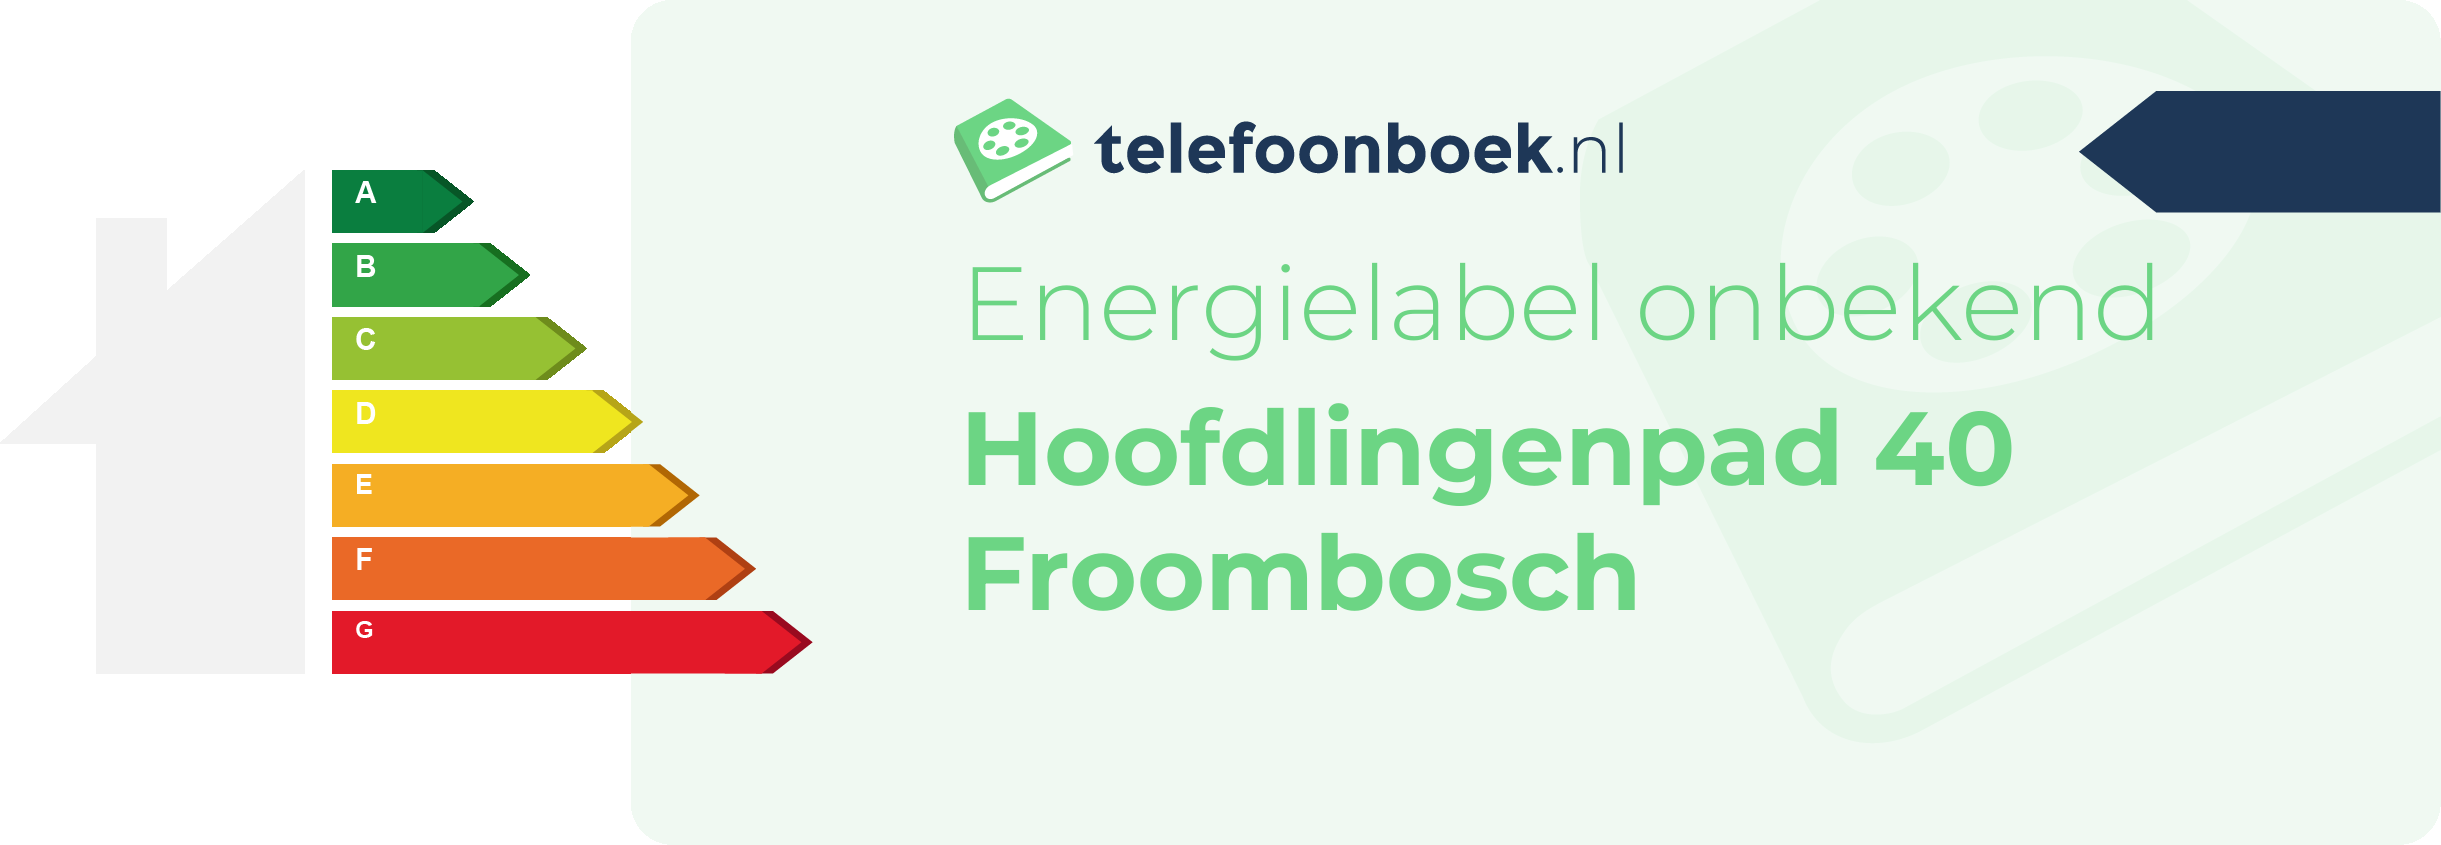 Energielabel Hoofdlingenpad 40 Froombosch